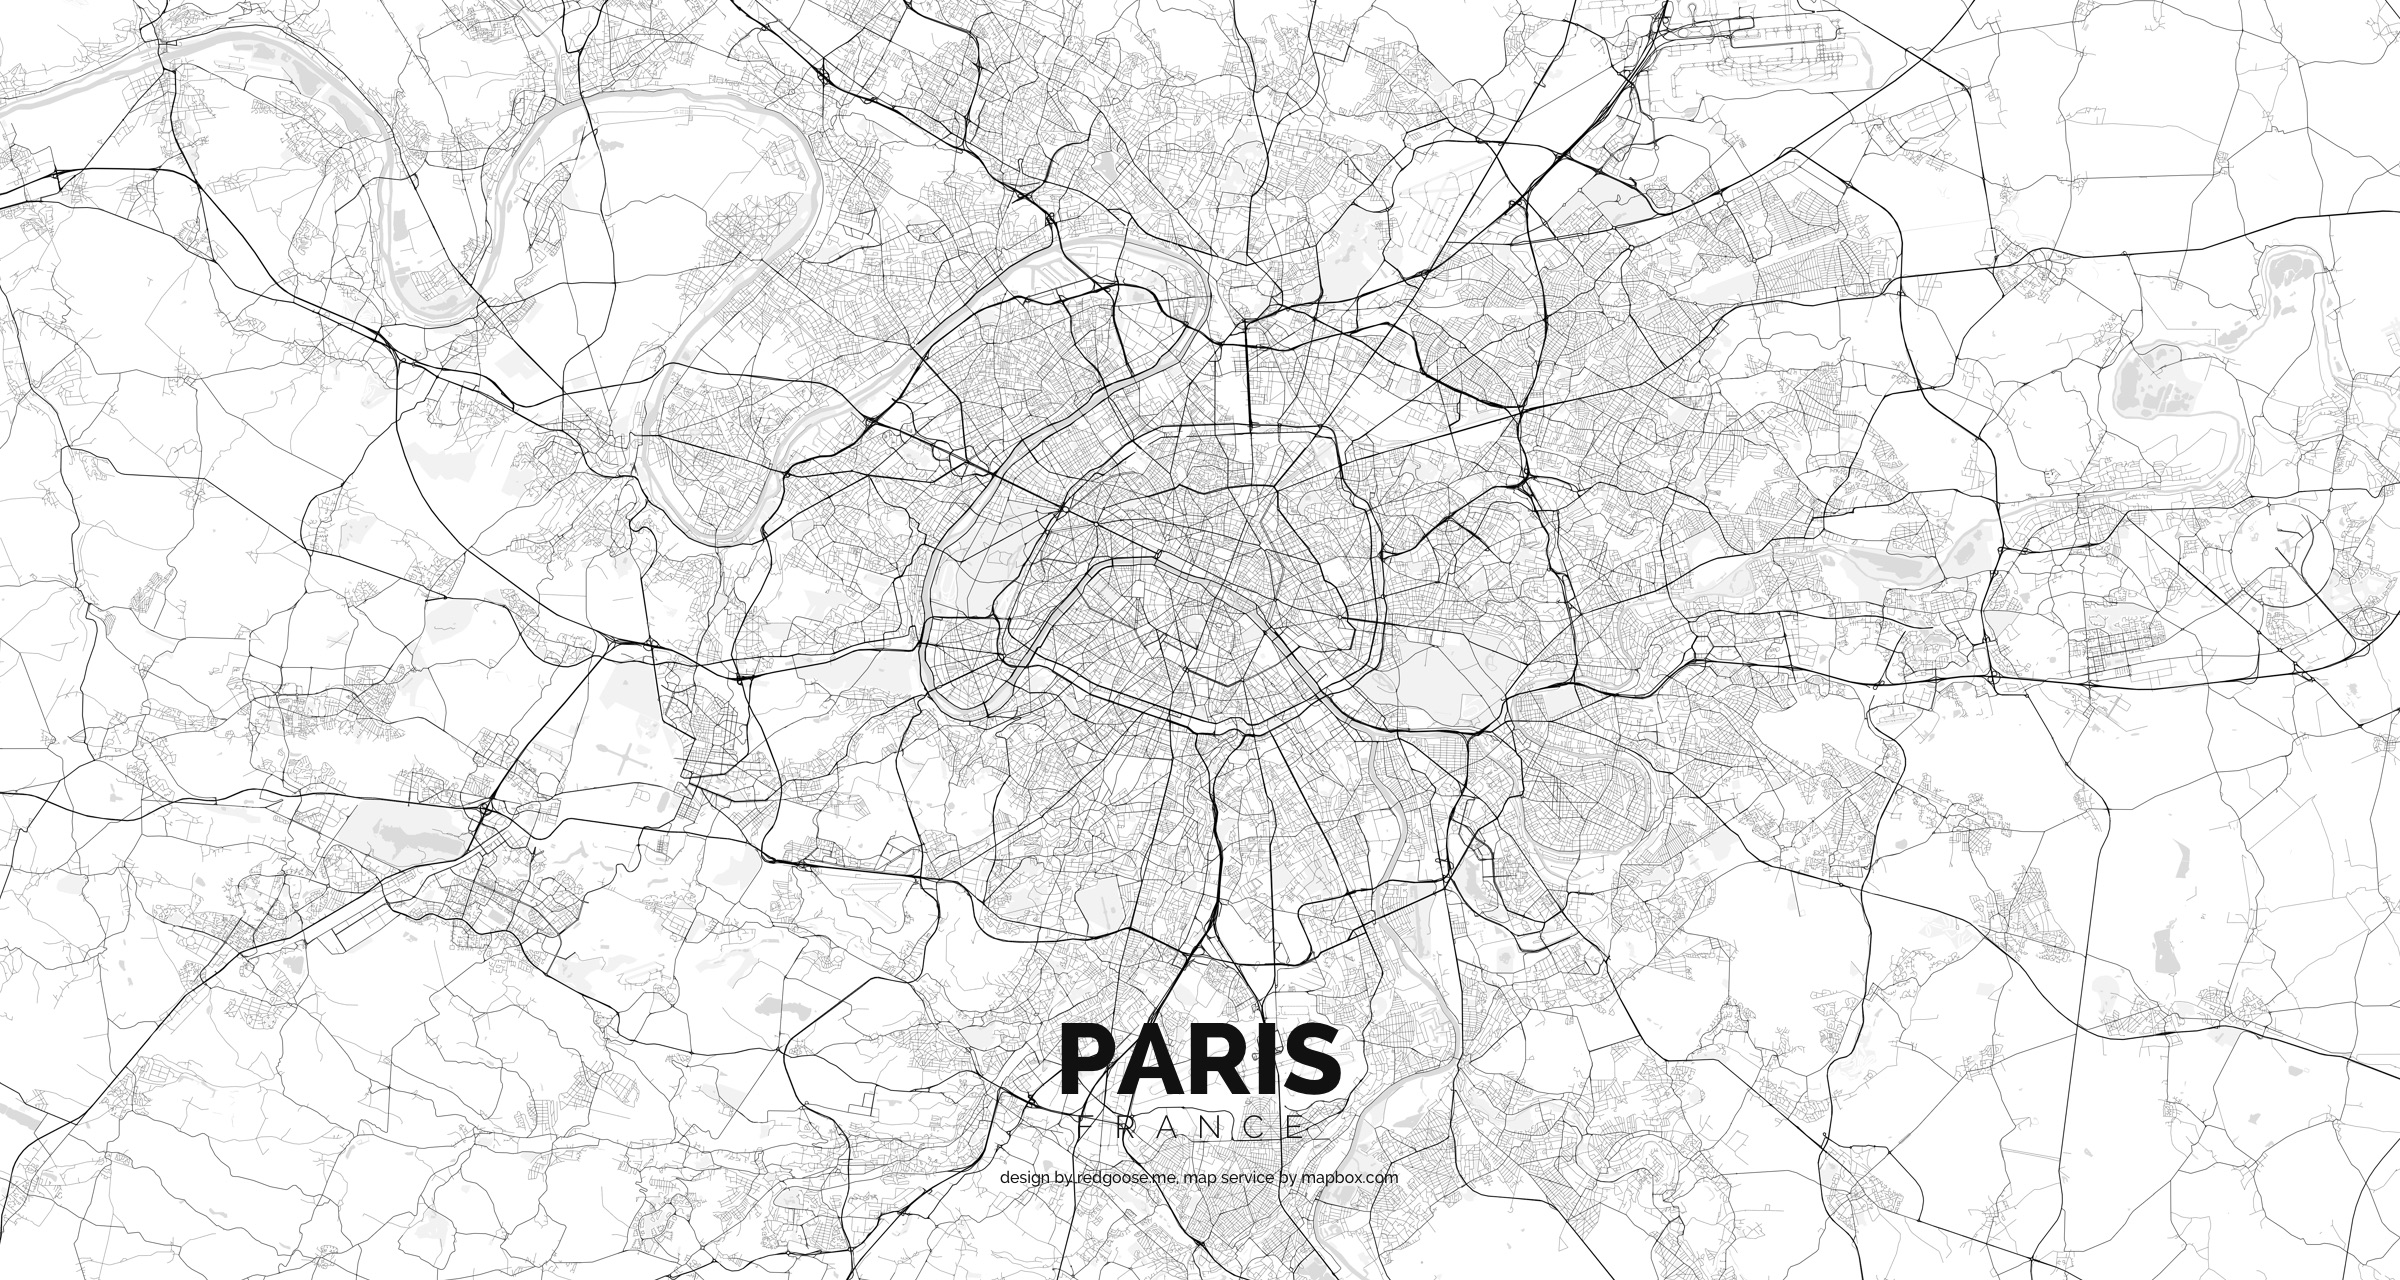 France_-_Paris.jpg